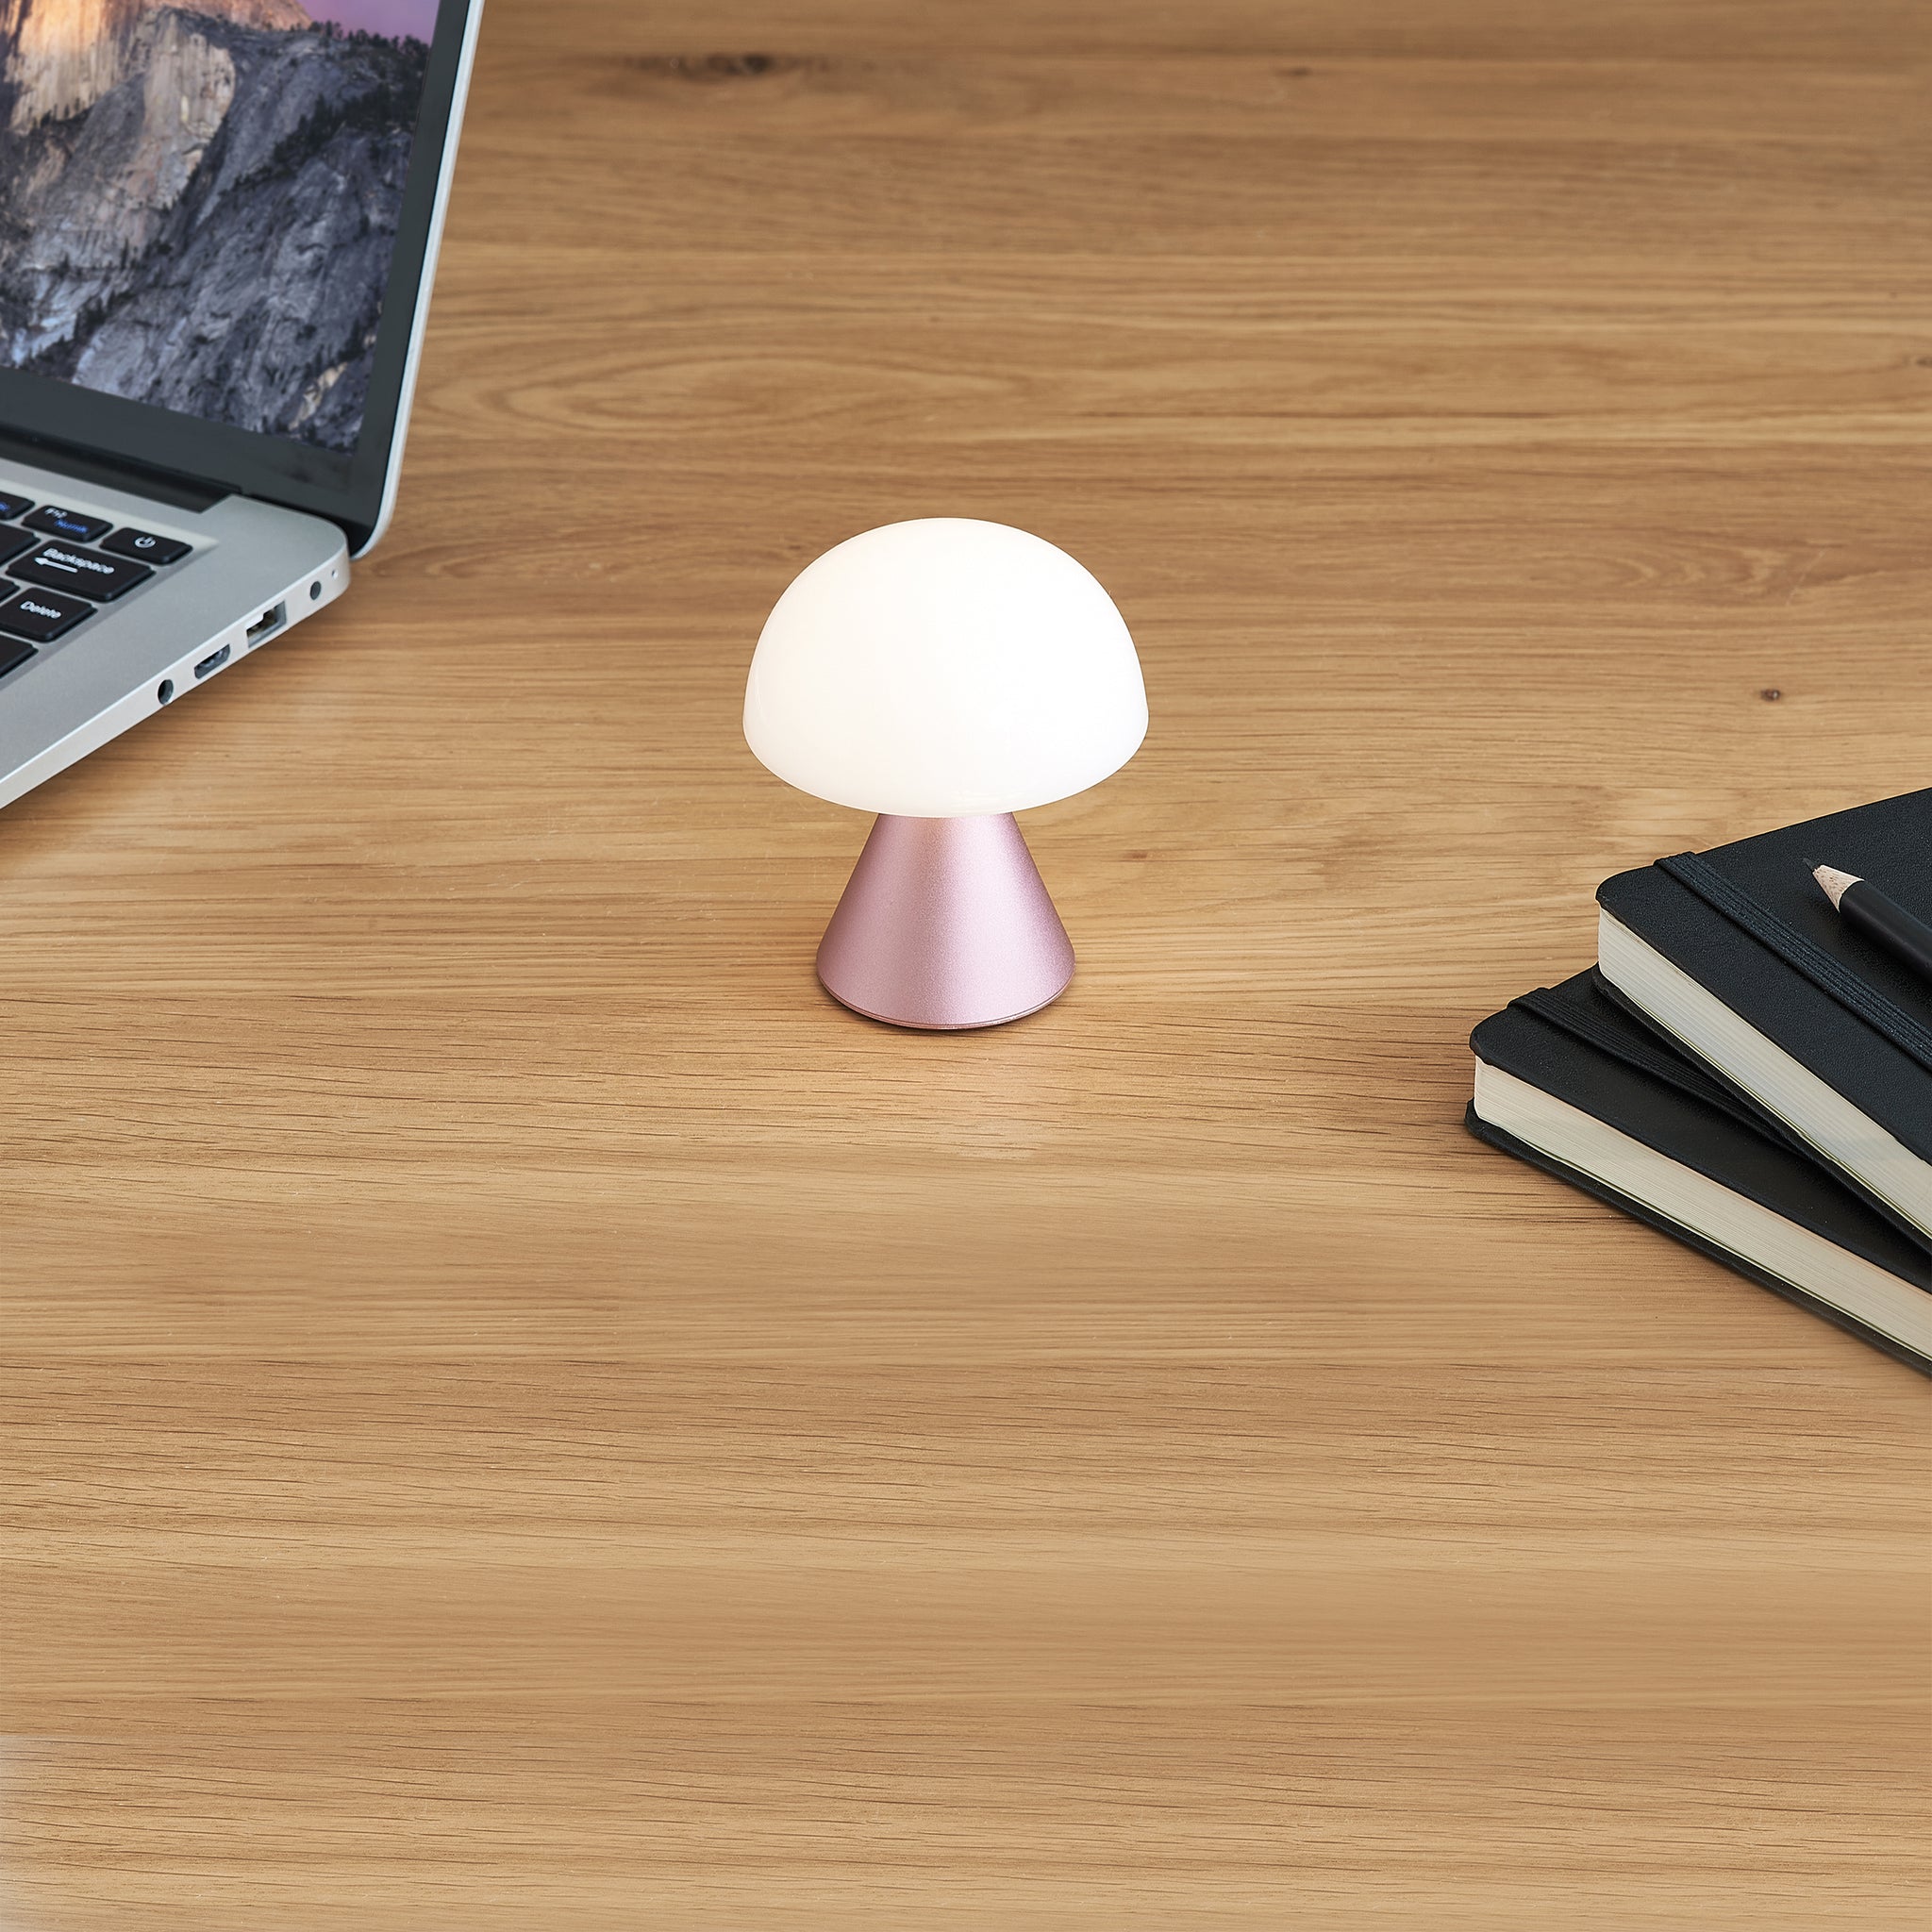 Lexon Mina Small Roze│Oplaadbare LED lamp│art. LH60MLP│op houten bureau naast laptop